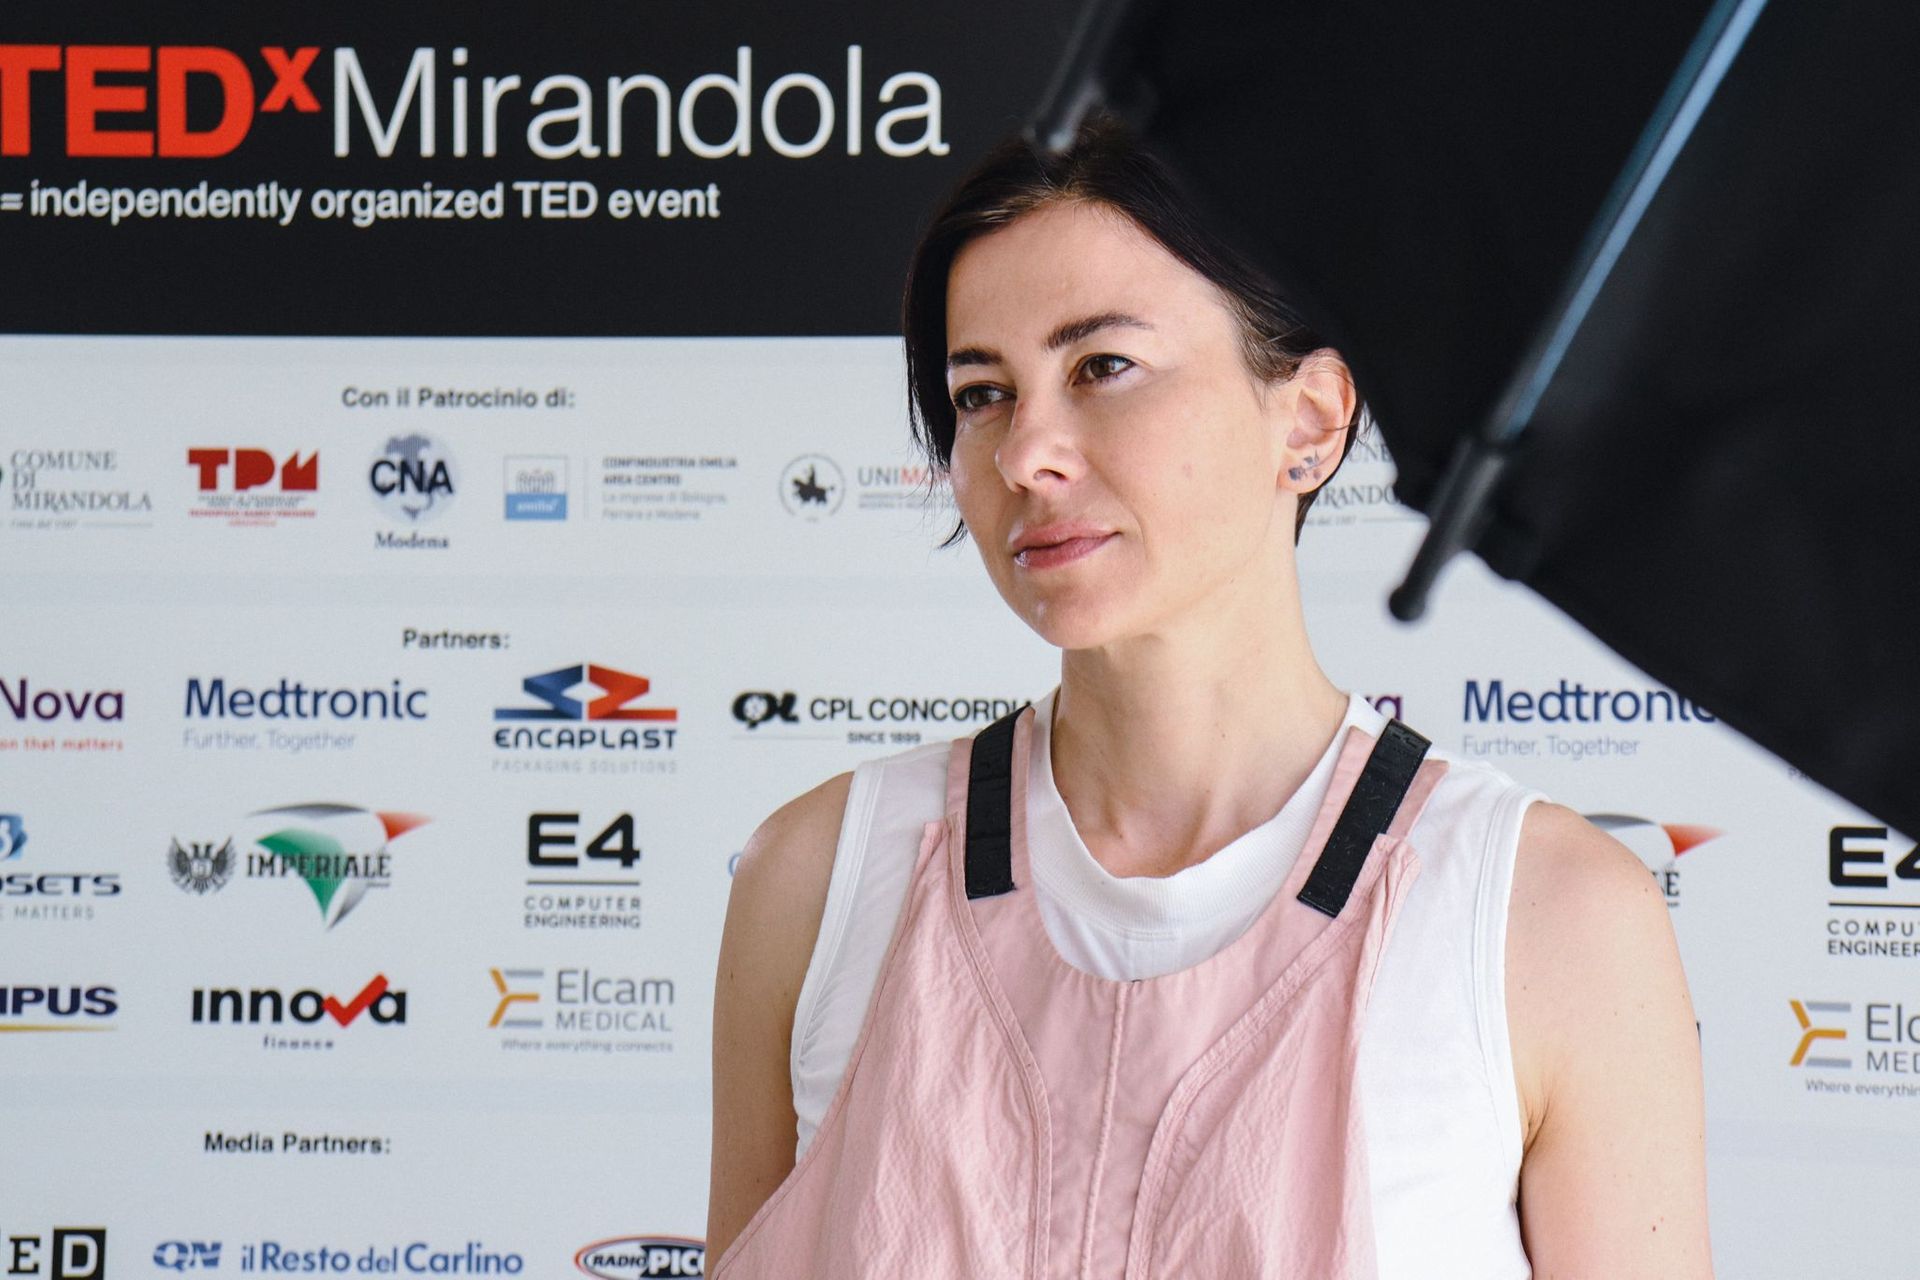 Основачот на фондацијата Маверкс, Франческа Веронези е ќерка на Марио, пионер на биомедицинскиот округ во 1962 година: таа беше говорник на првото издание на TEDx Мирандола.